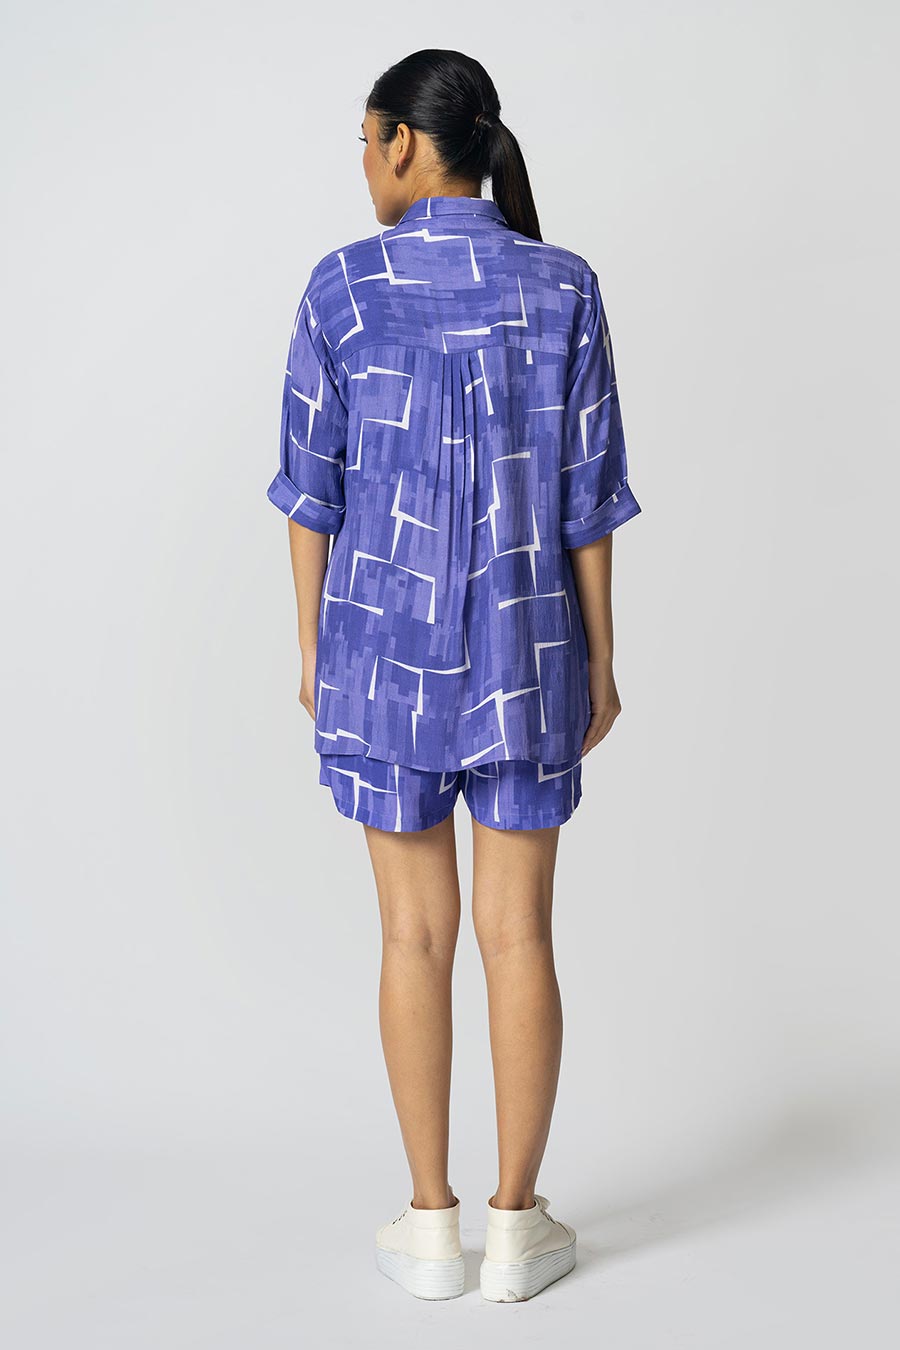 Lilac Brick Printed Shirt, Inner & Shorts Co-Ord Set